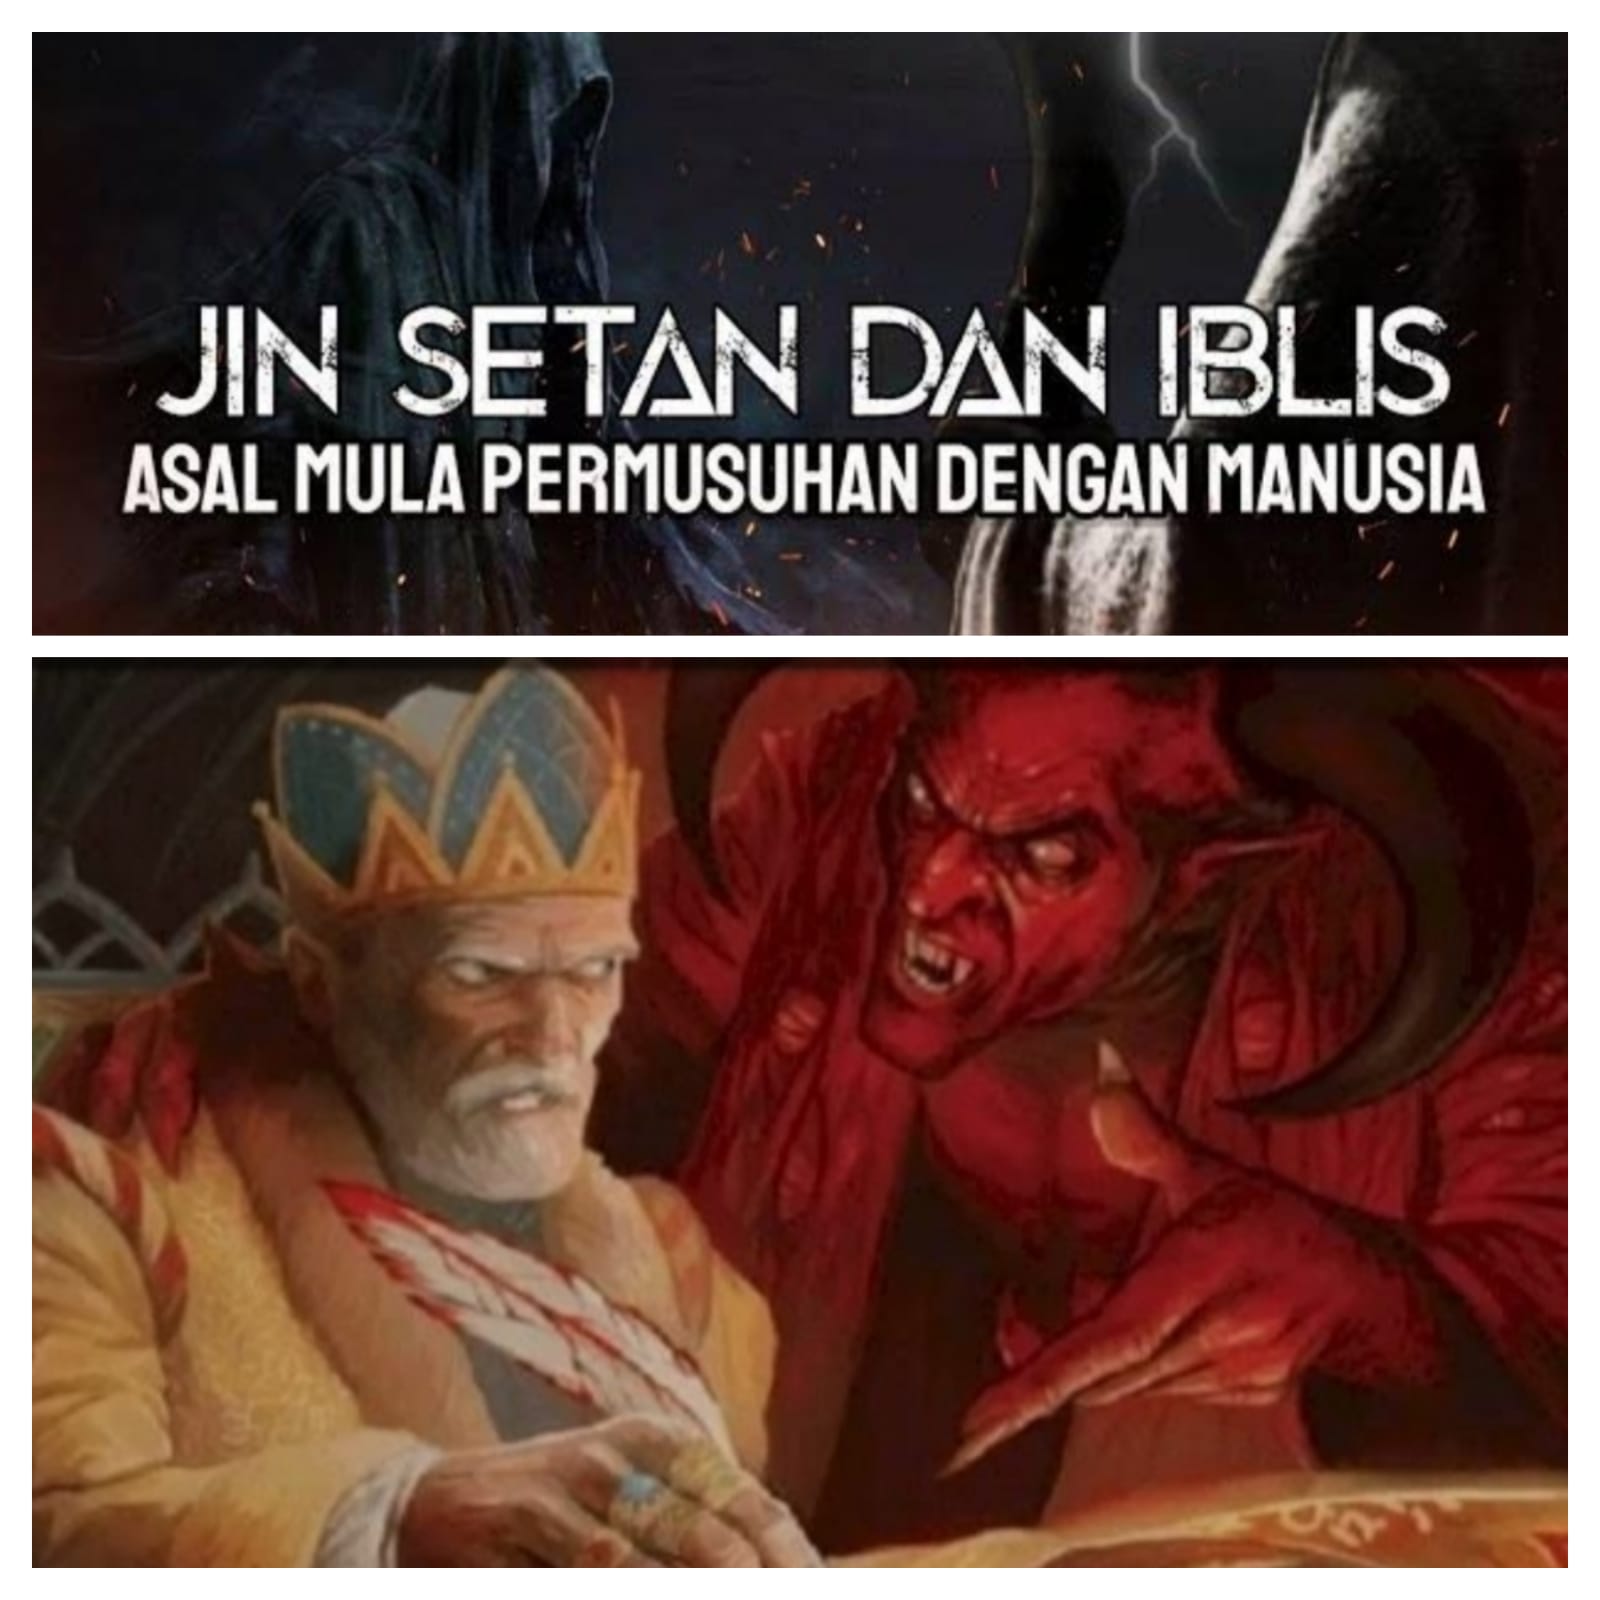  Jin, Setan, Iblis dan Asal Mula Permusuhan dengan Manusia. Simak!